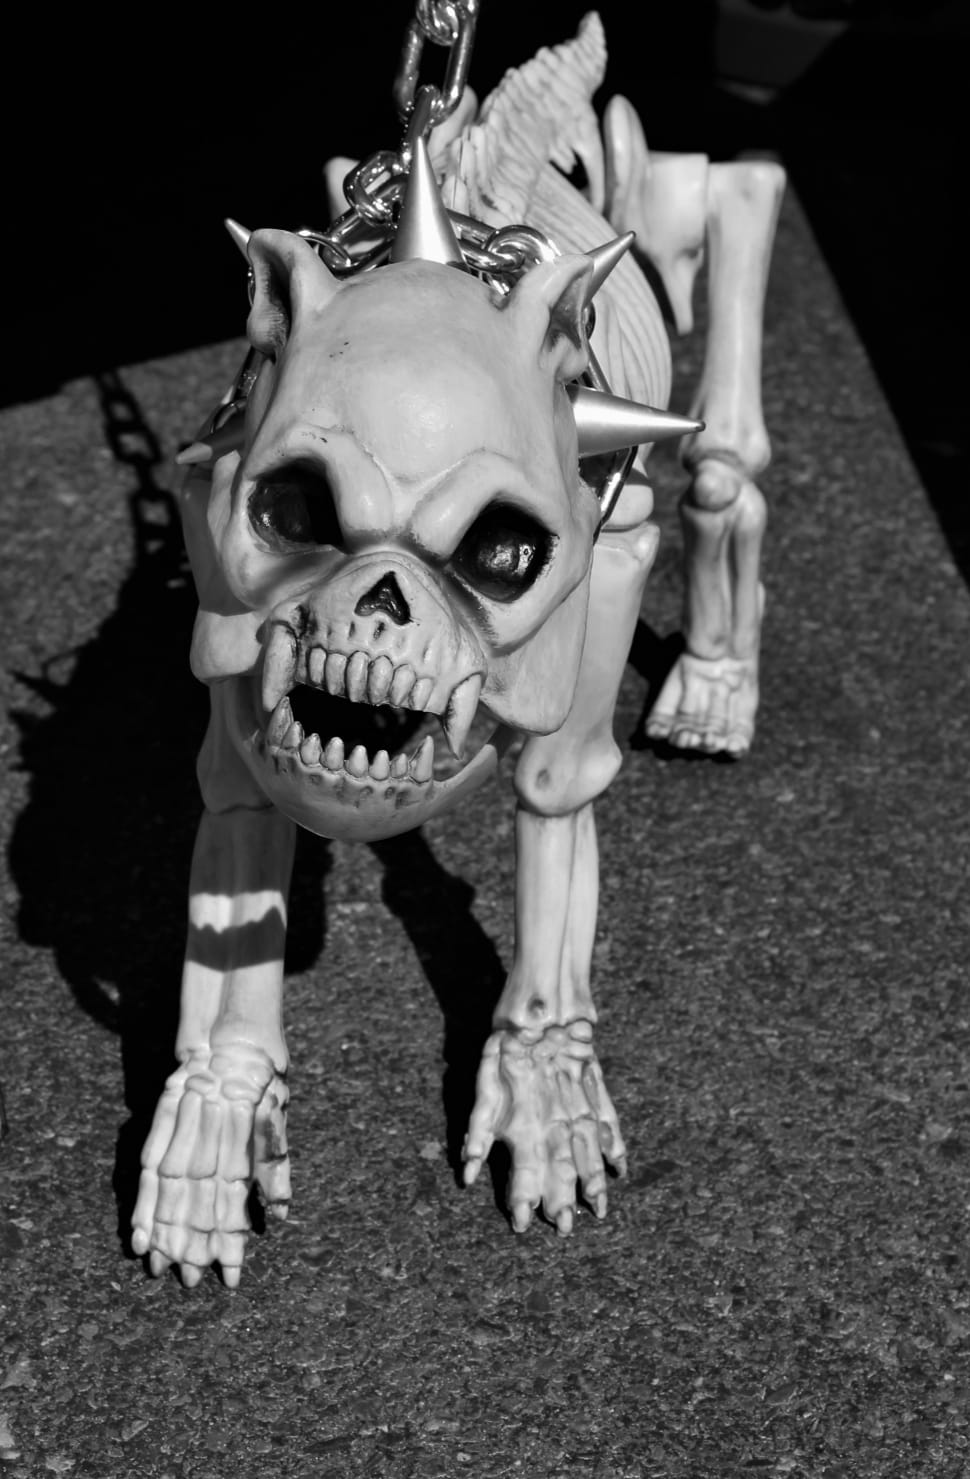 white skull dog figure preview